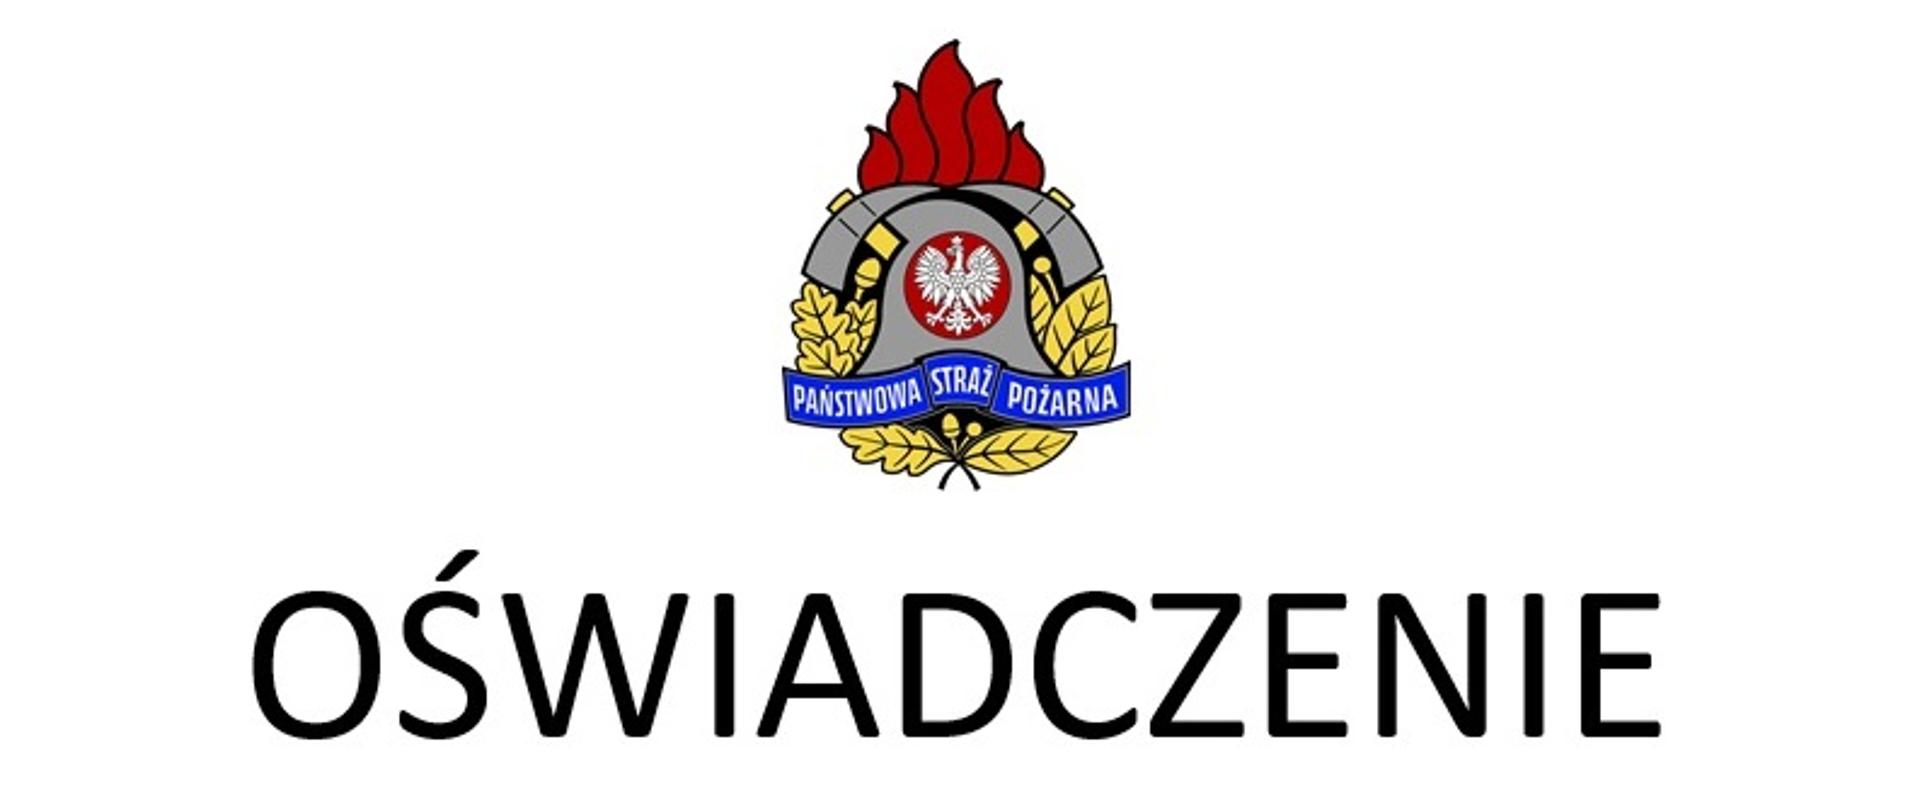 Na zdjęciu logo Państwowej Straży Pożarnej, a pod nim napis "Oświadczenie"